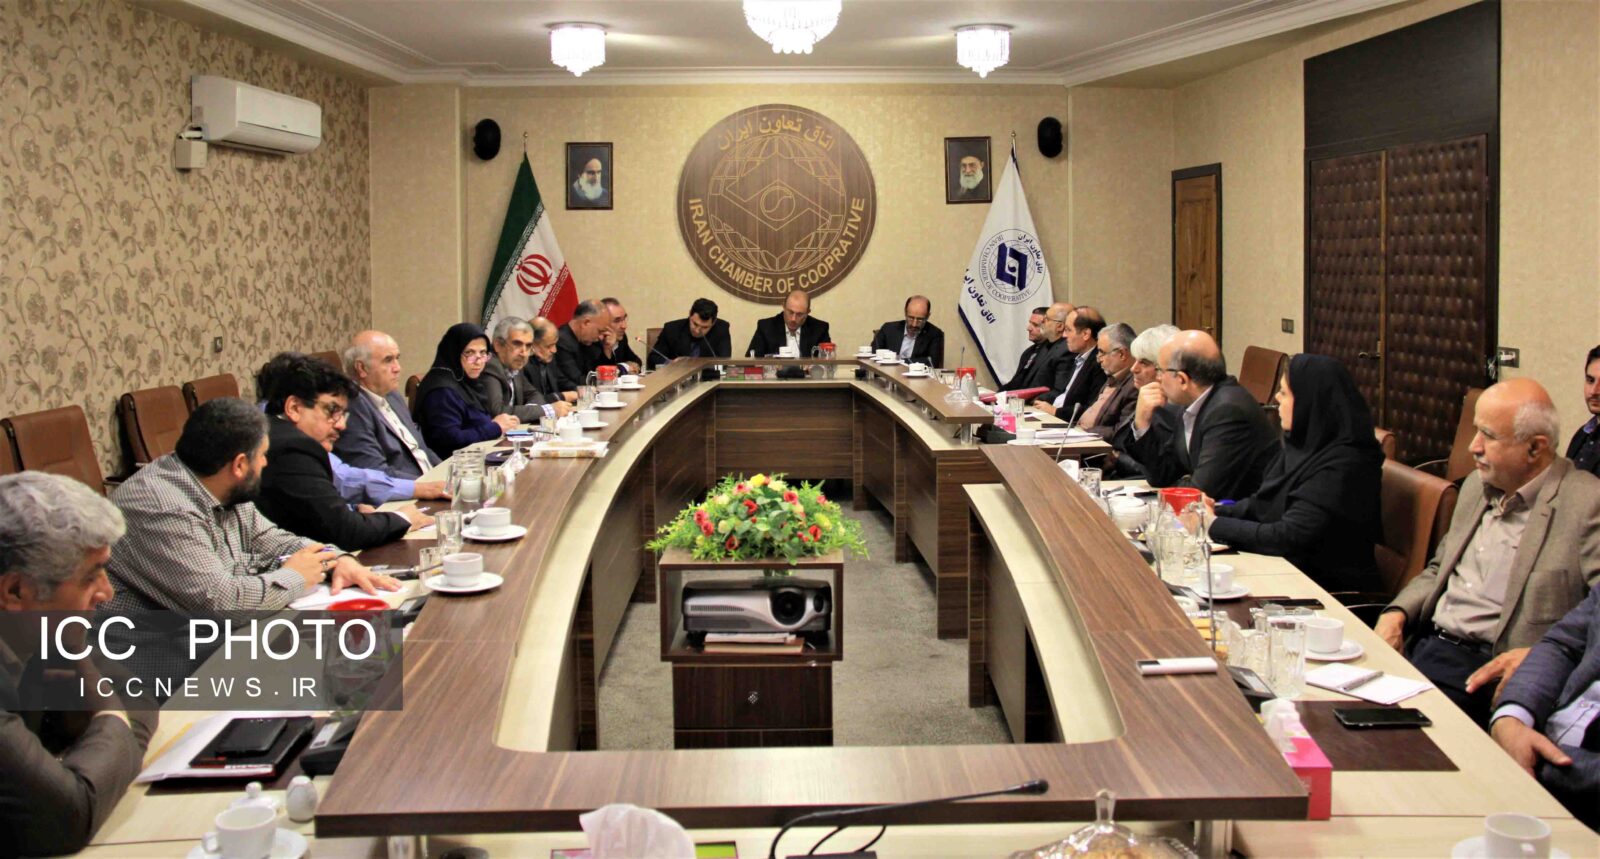 نشست مشترک کمیسیون های مصرف و مسکن در اتاق تعاون/ بررسی همکاری با اتحادیه عام تعاون عراق